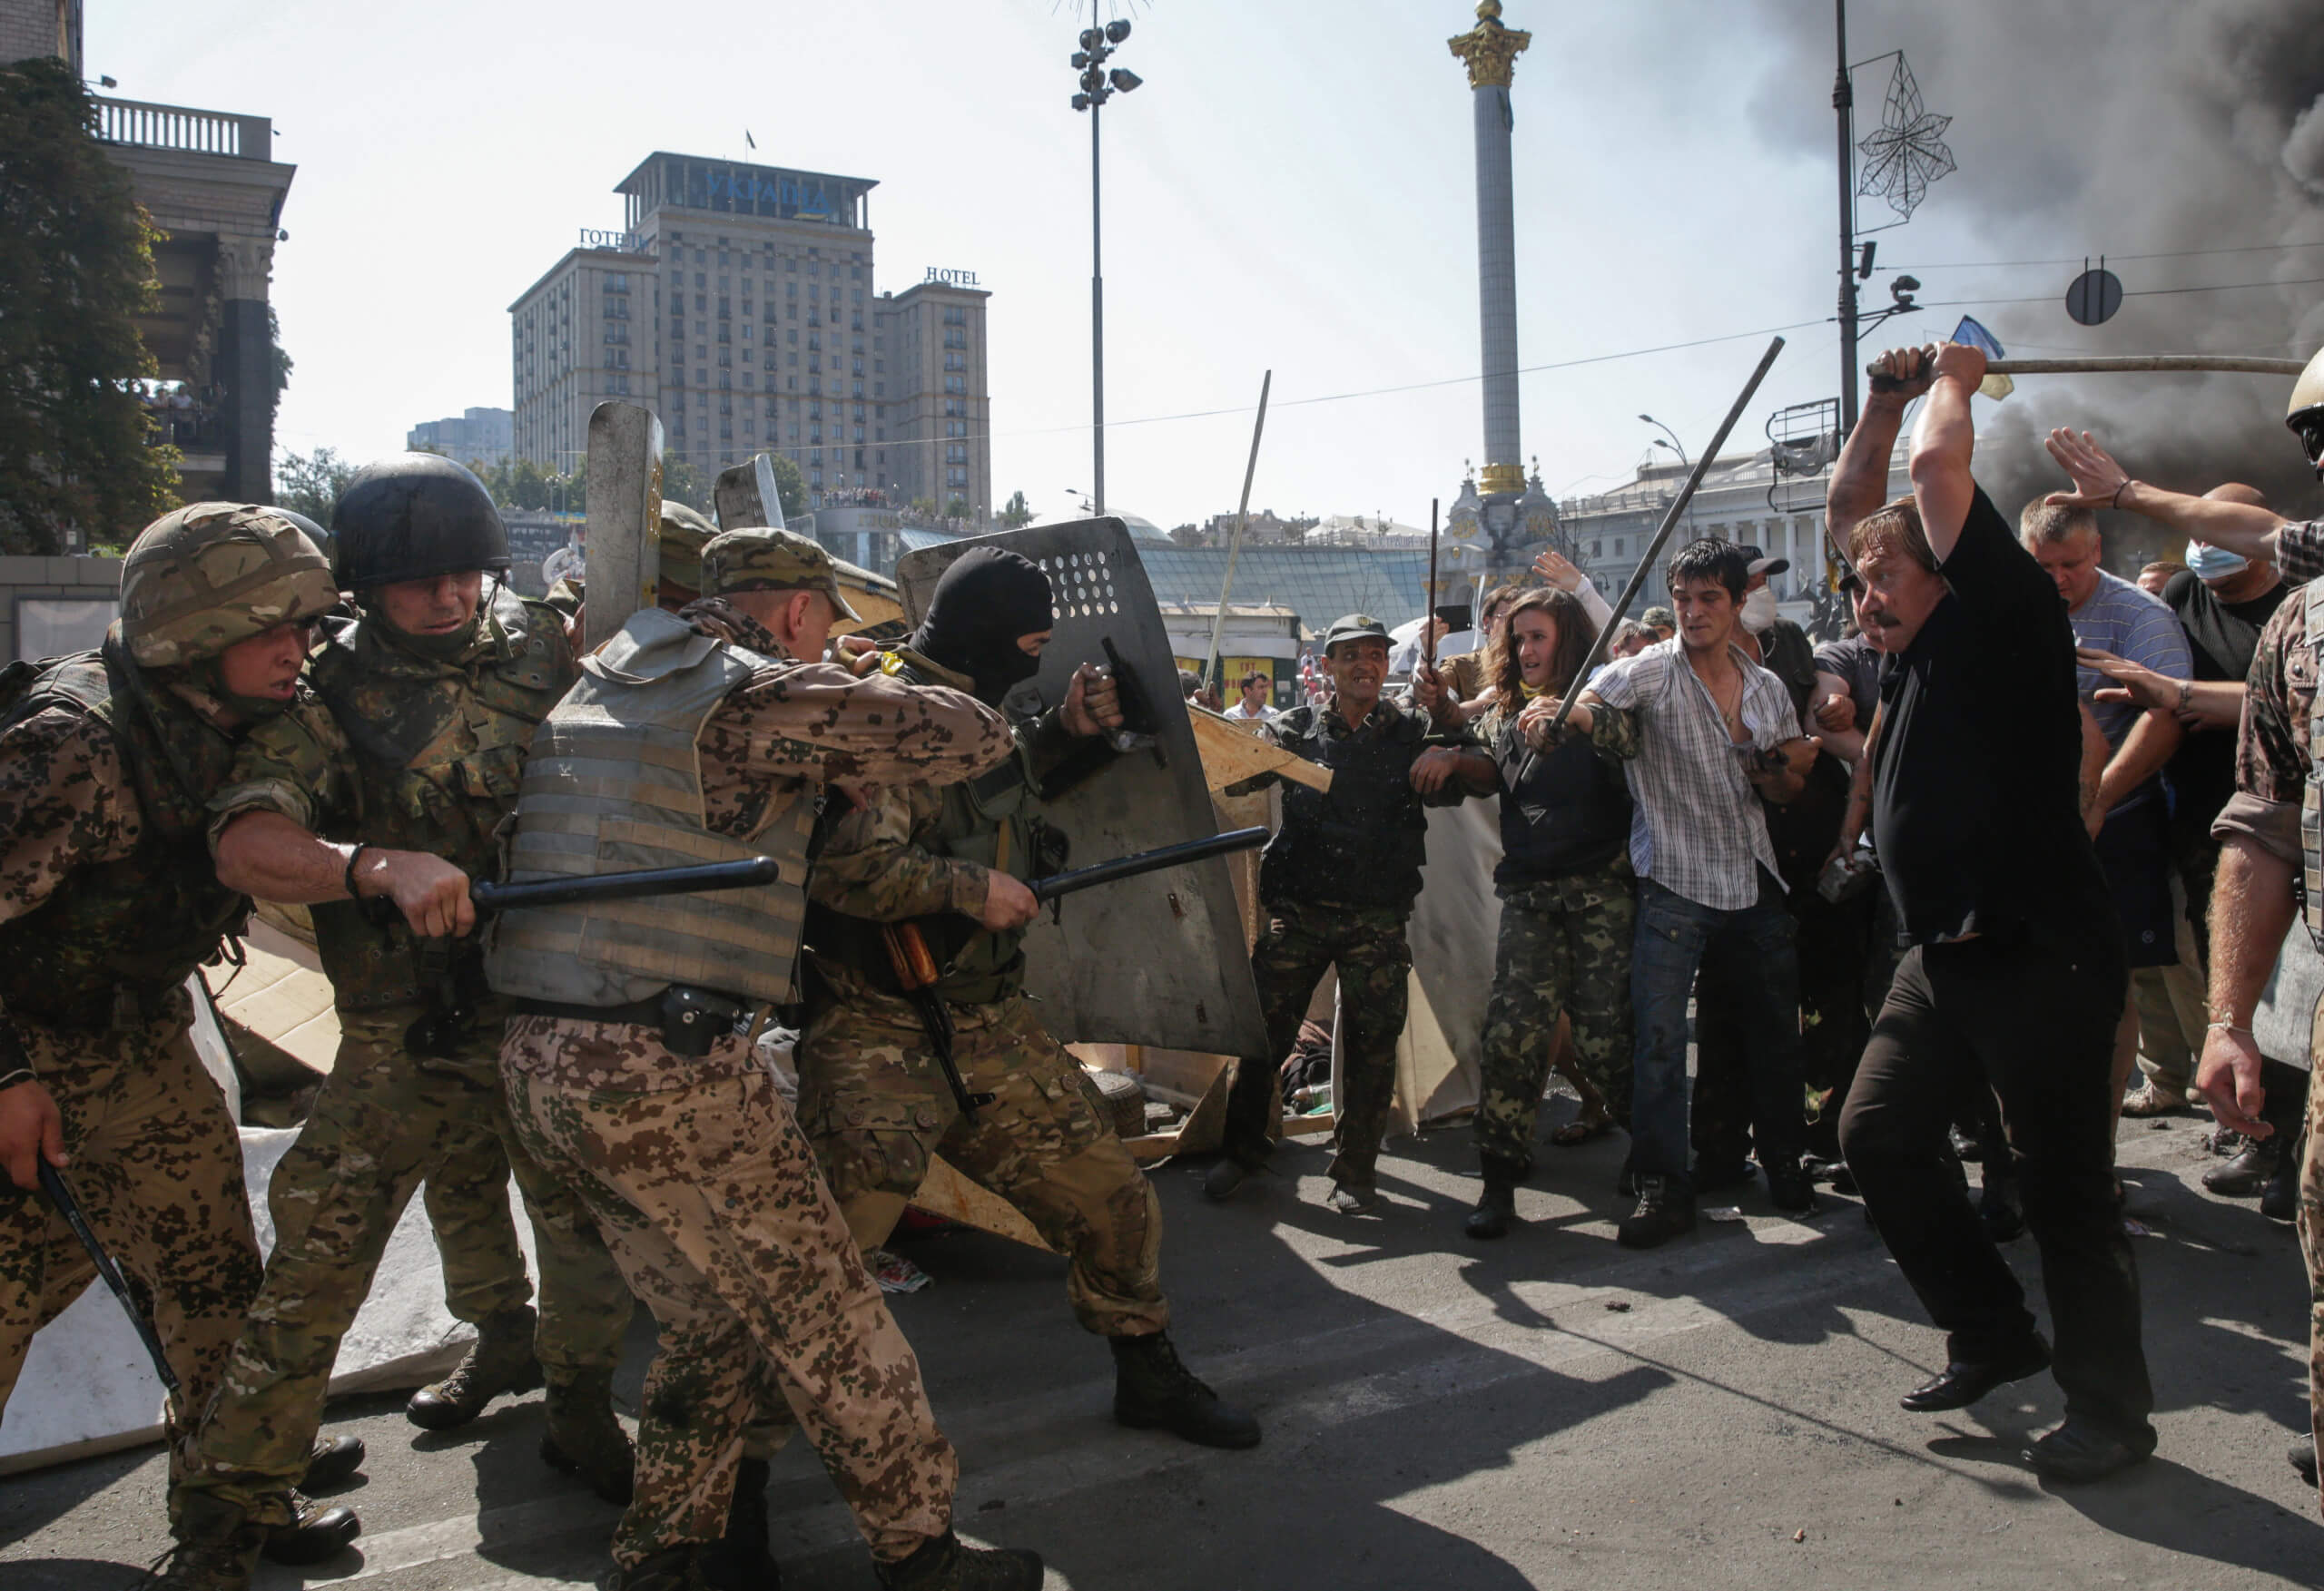 Immer wieder kam es im Zuge der Euromaidan-Proteste 2014 in Kiew zu gewaltsamen Auseinandersetzungen zwischen Protestierenden und der Polizei und Stadtverwaltung (Quelle: Picture Alliance / Joker / Konstantin Chernichkin / est&ost / J)